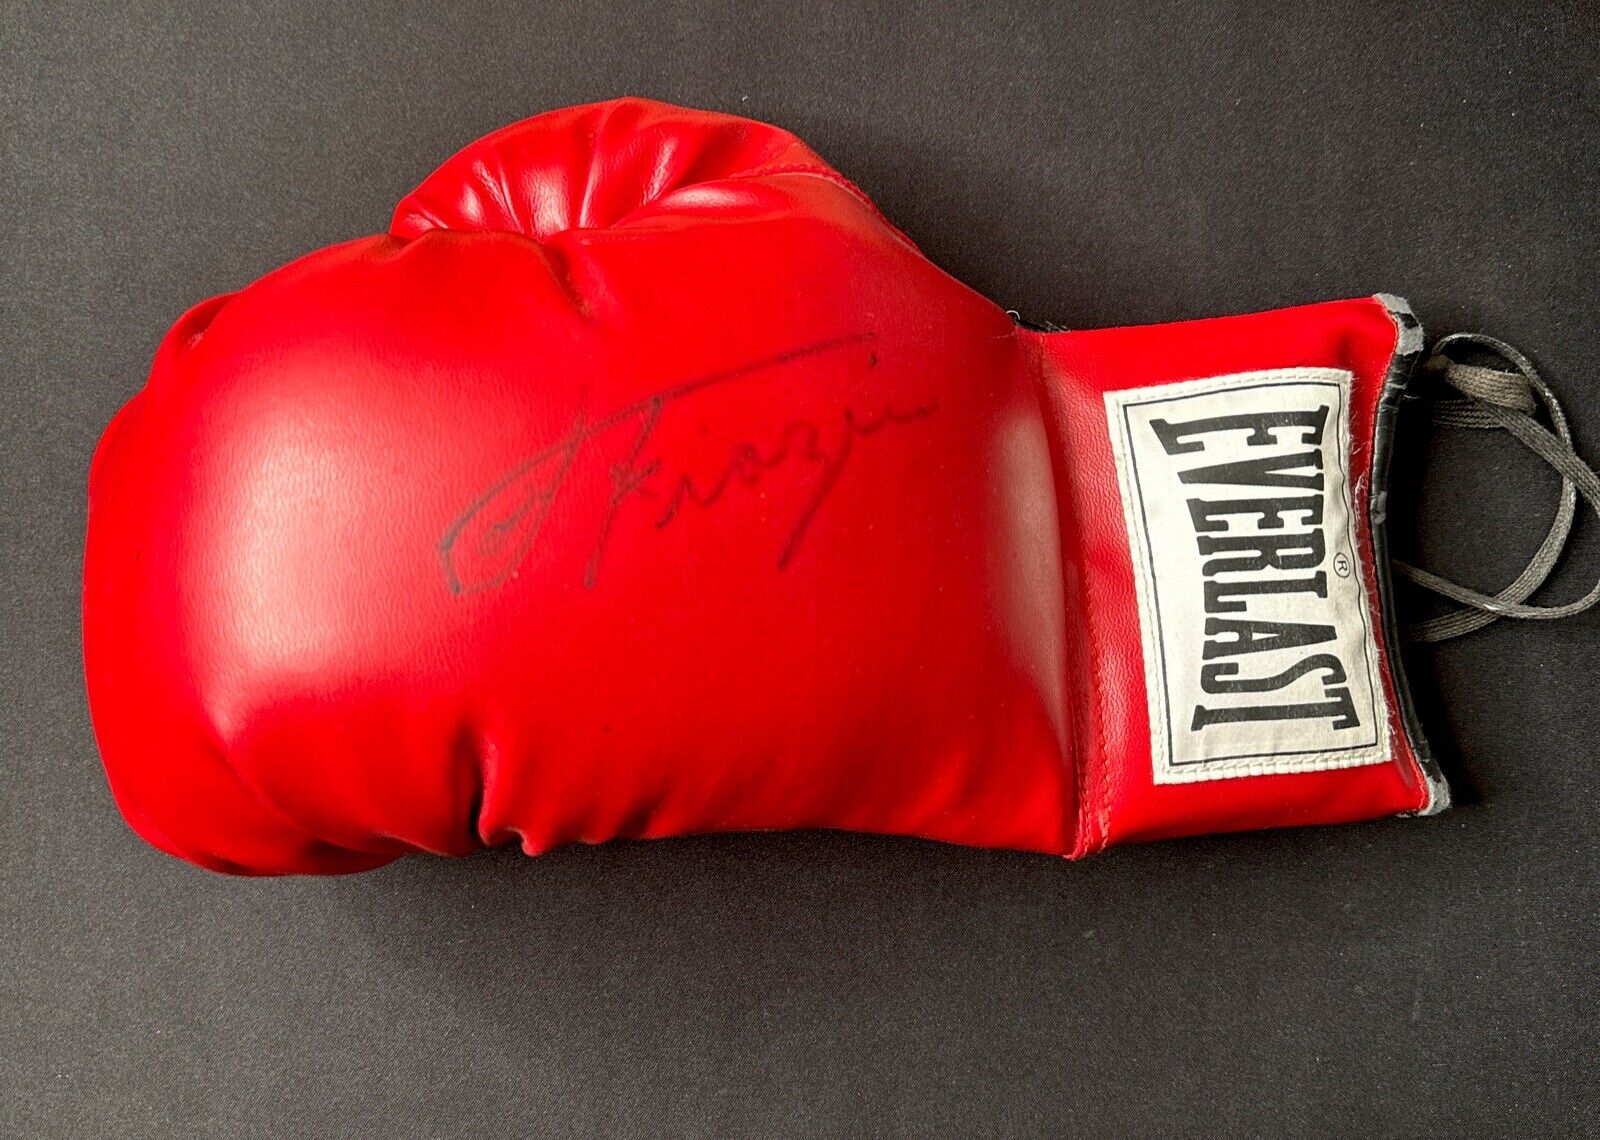 Joe Frazier Signed Boxing Glove Everlast Autographed Vintage Legend HOF Sports